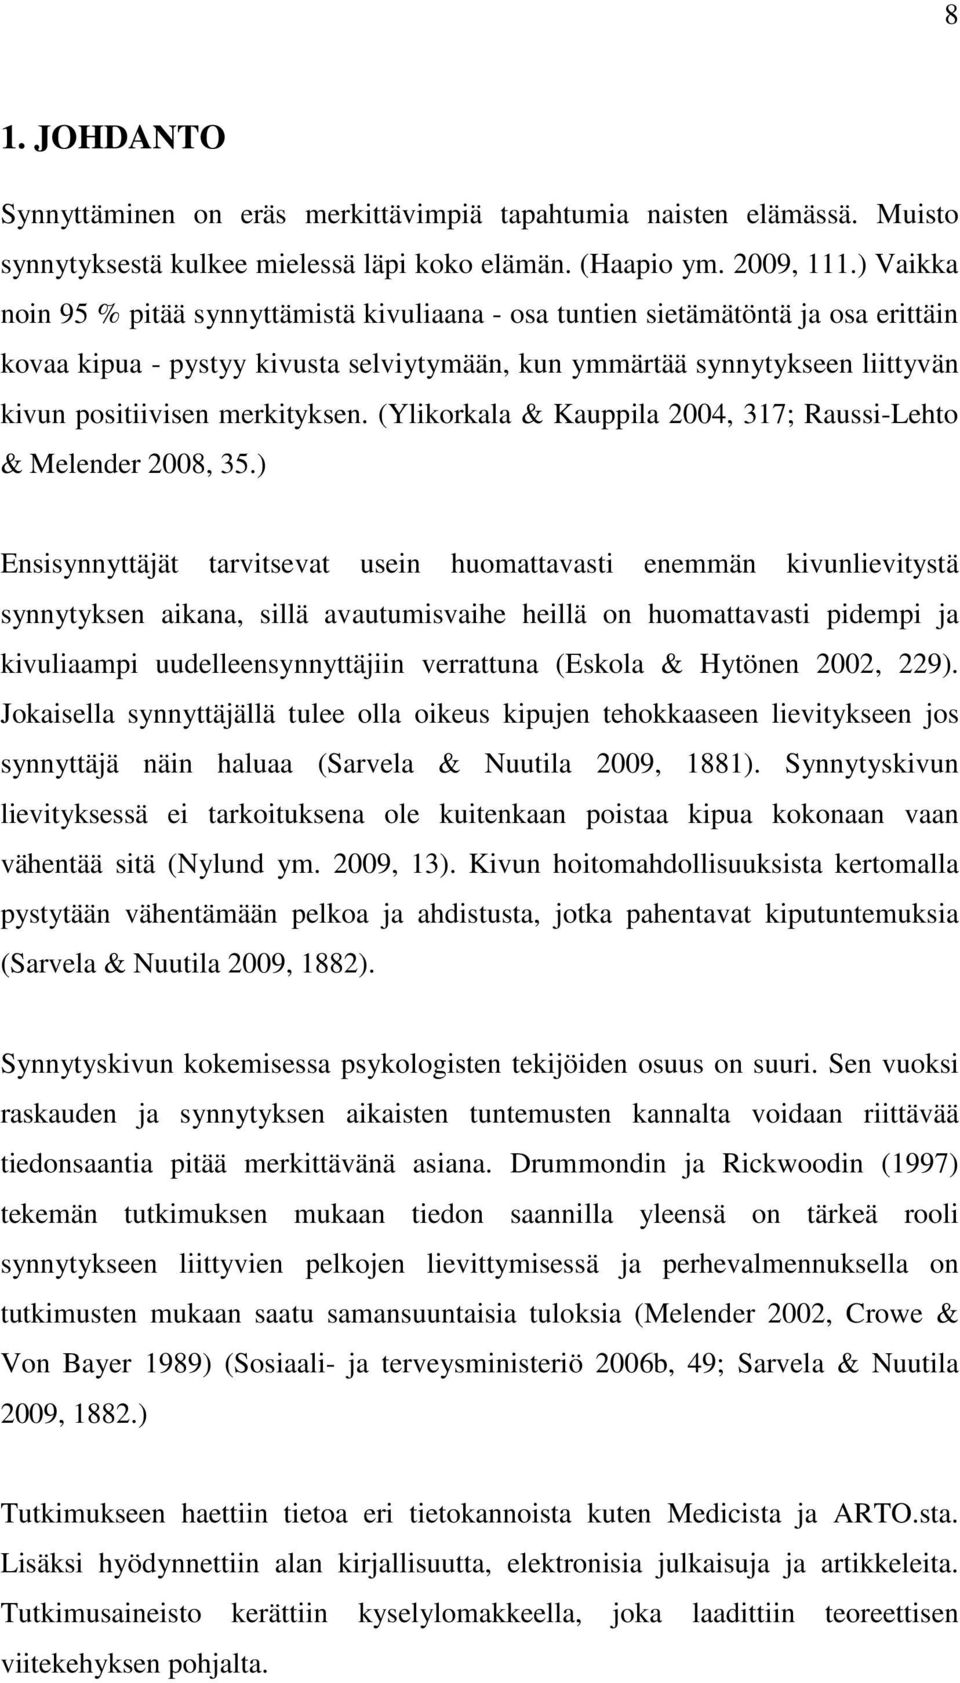 merkityksen. (Ylikorkala & Kauppila 2004, 317; Raussi-Lehto & Melender 2008, 35.